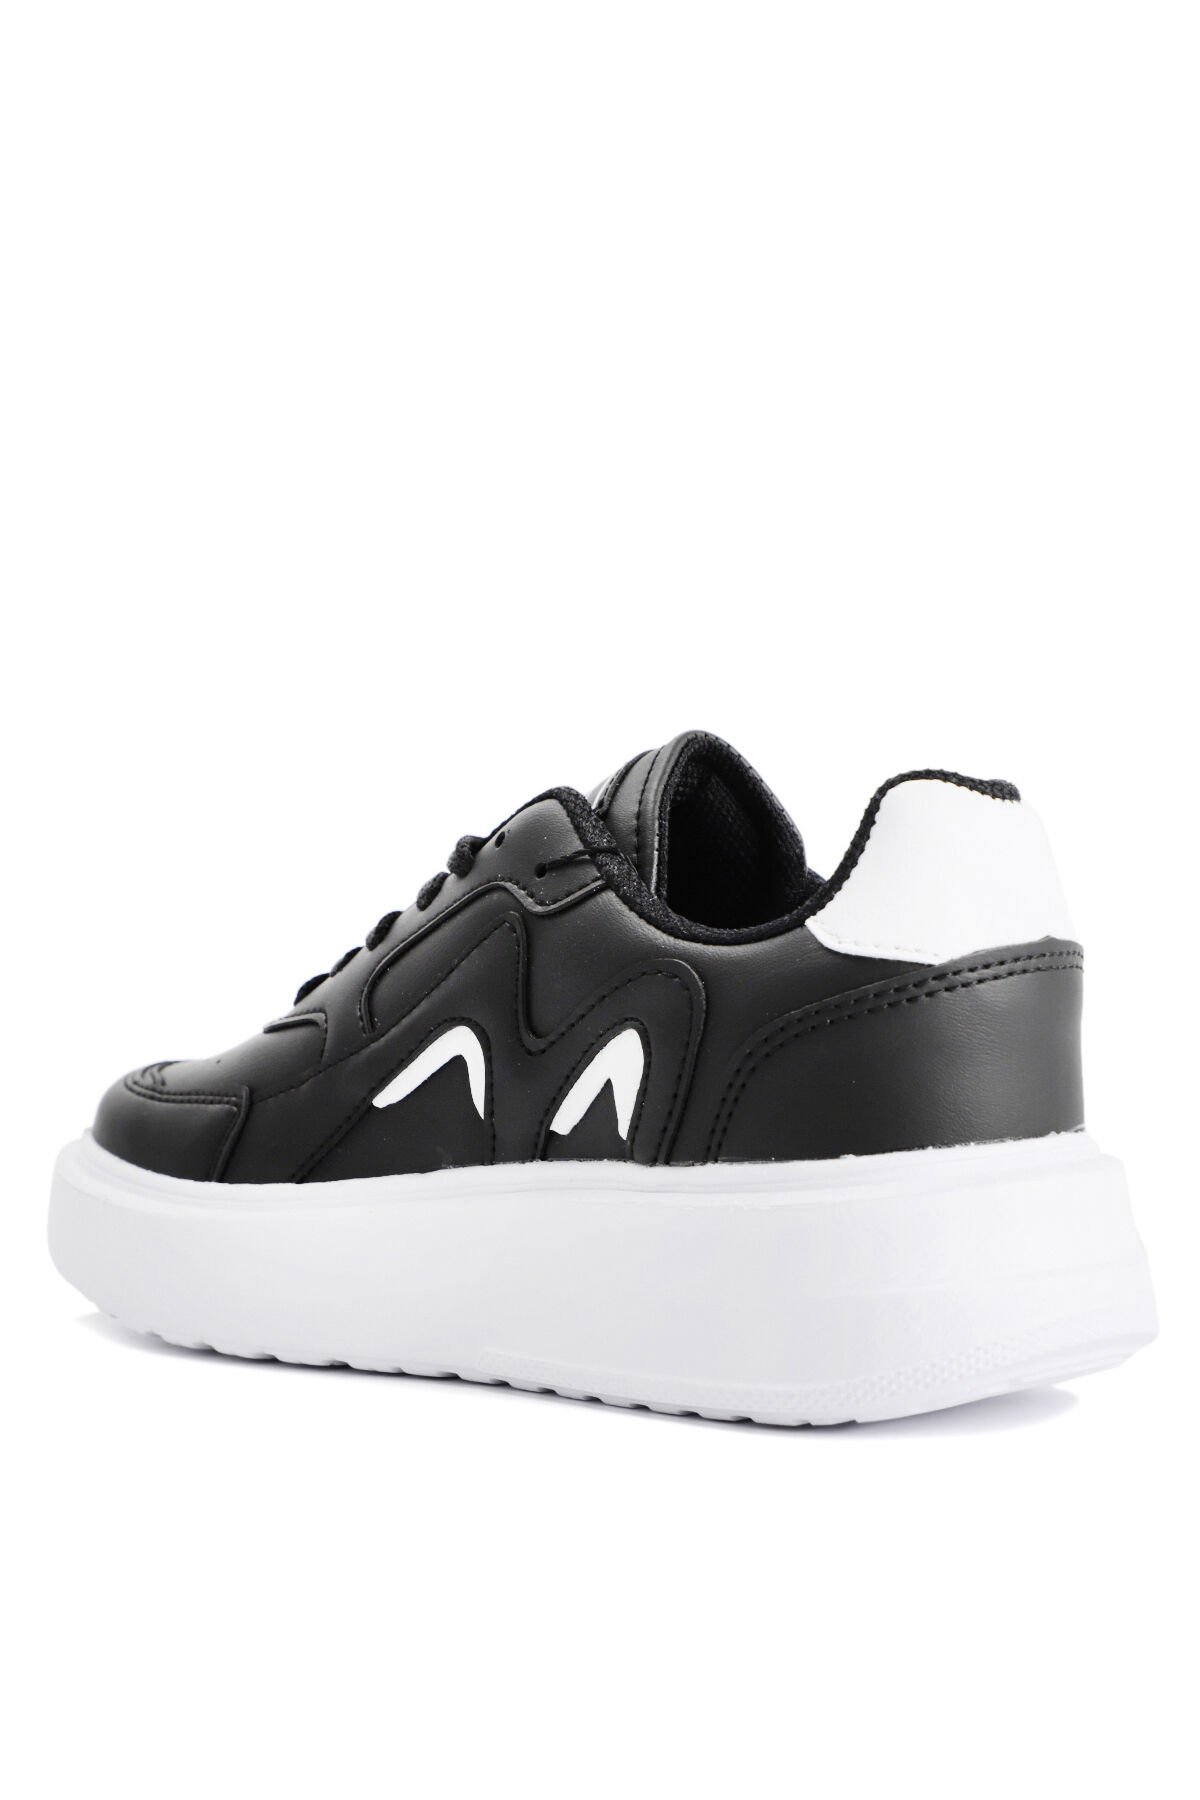 Slazenger ZENIA Sneaker Kadın Ayakkabı Siyah / Beyaz - Thumbnail